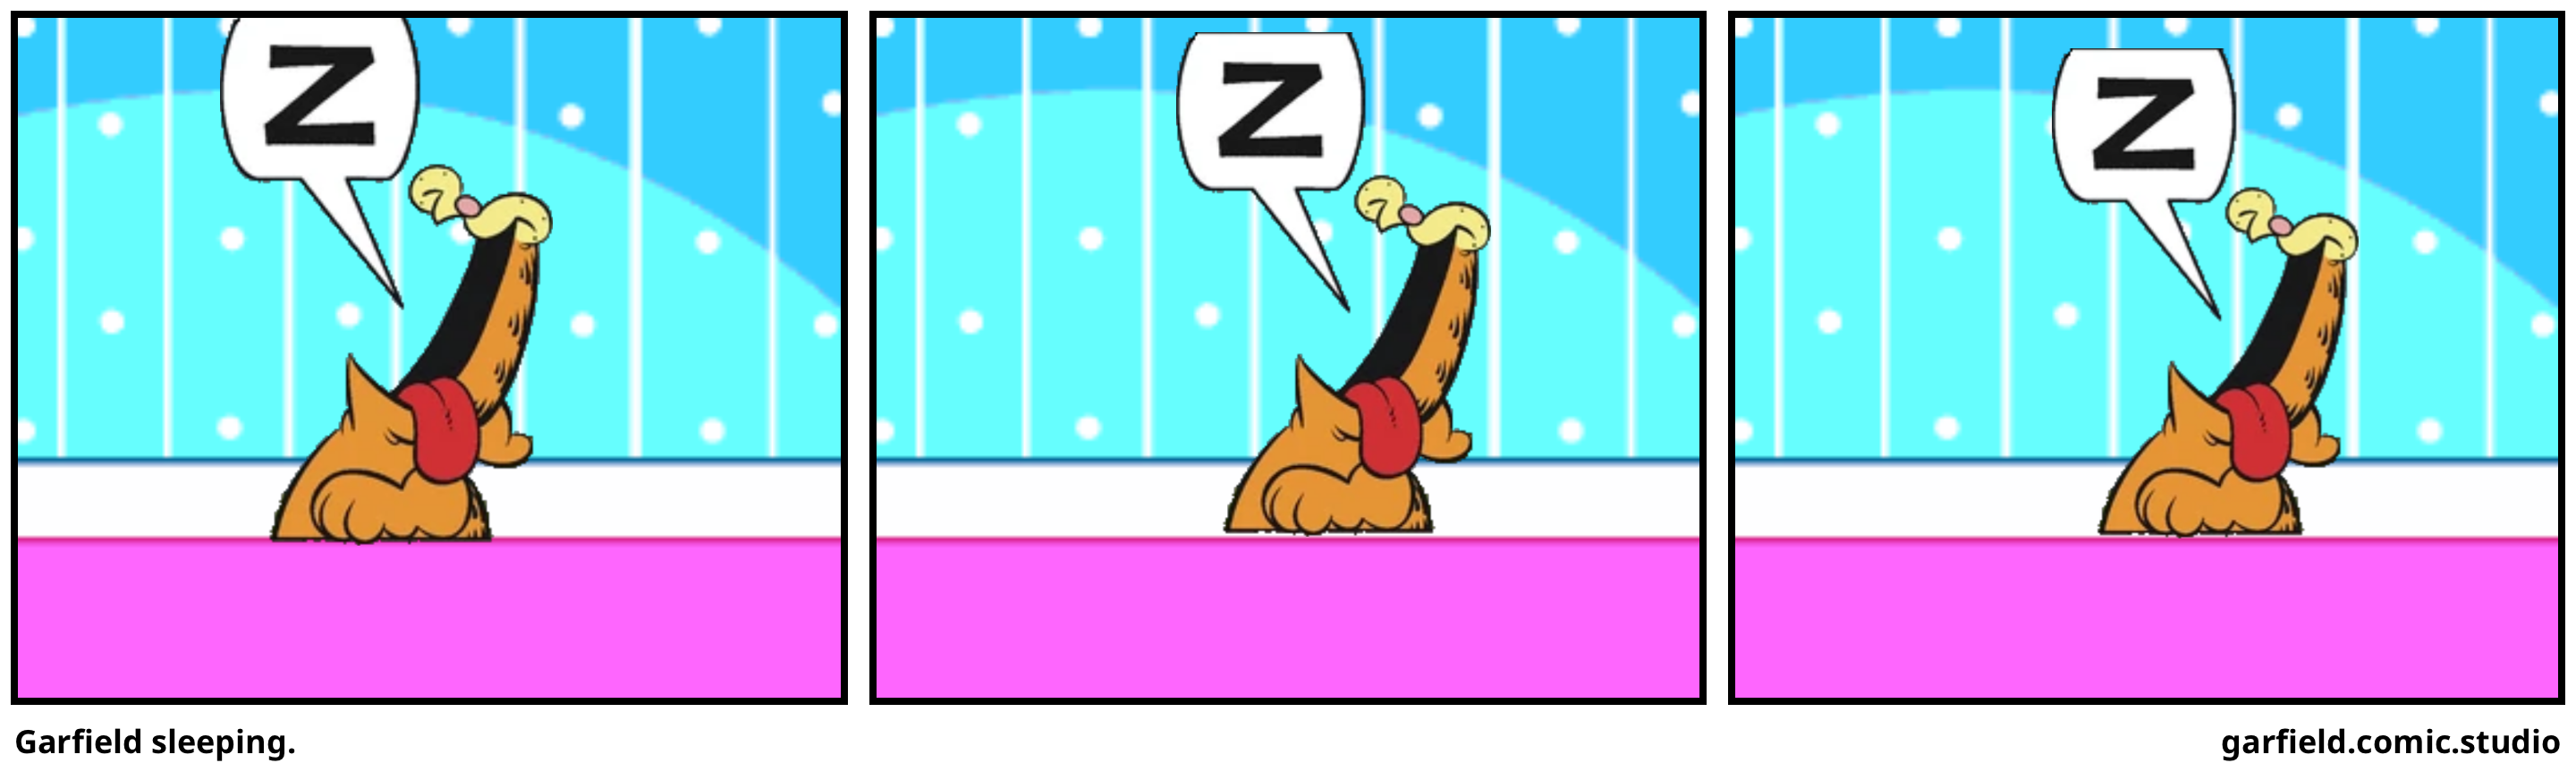 Garfield sleeping.